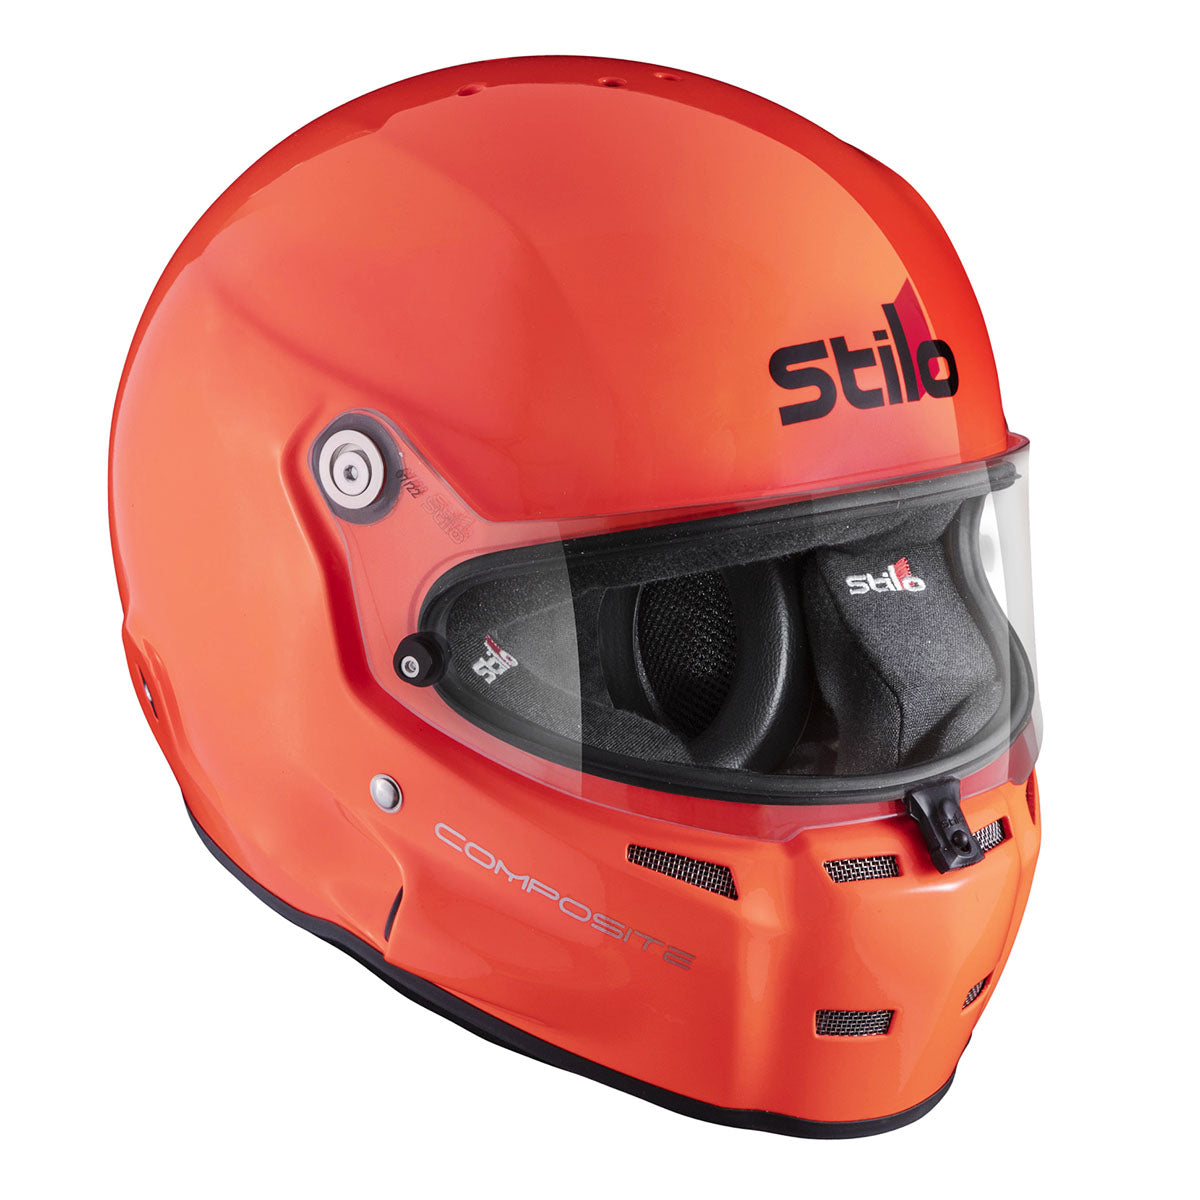 "Stilo ST5.1 GT Offshore Racing Helmet - Sleek Design for Speed Enthusiasts"